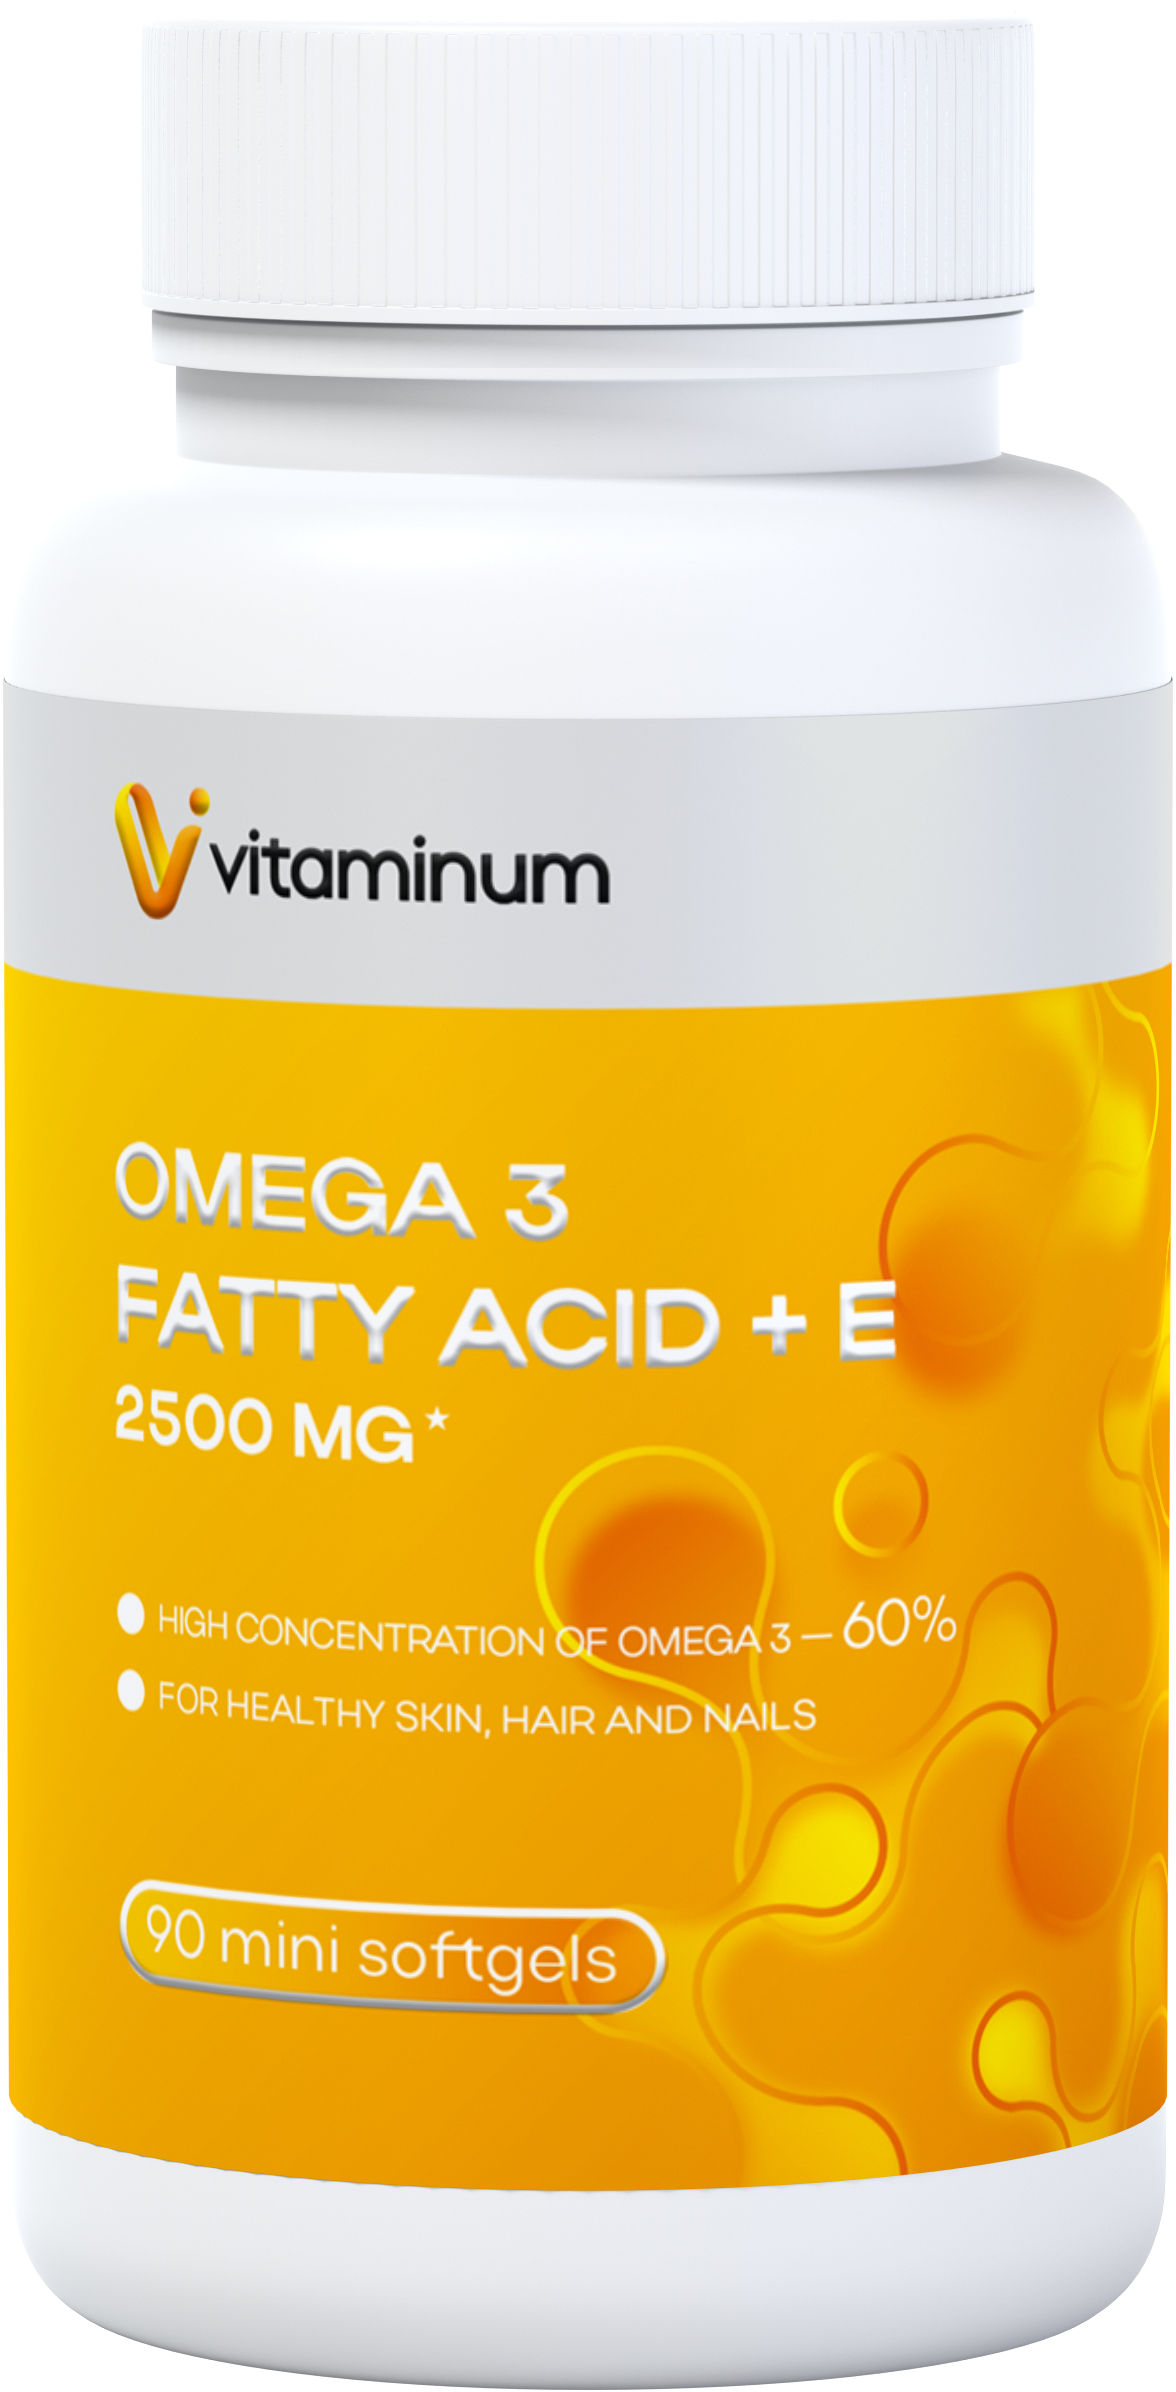  Vitaminum ОМЕГА 3 60% + витамин Е (2500 MG*) 90 капсул 700 мг   в Тамбове